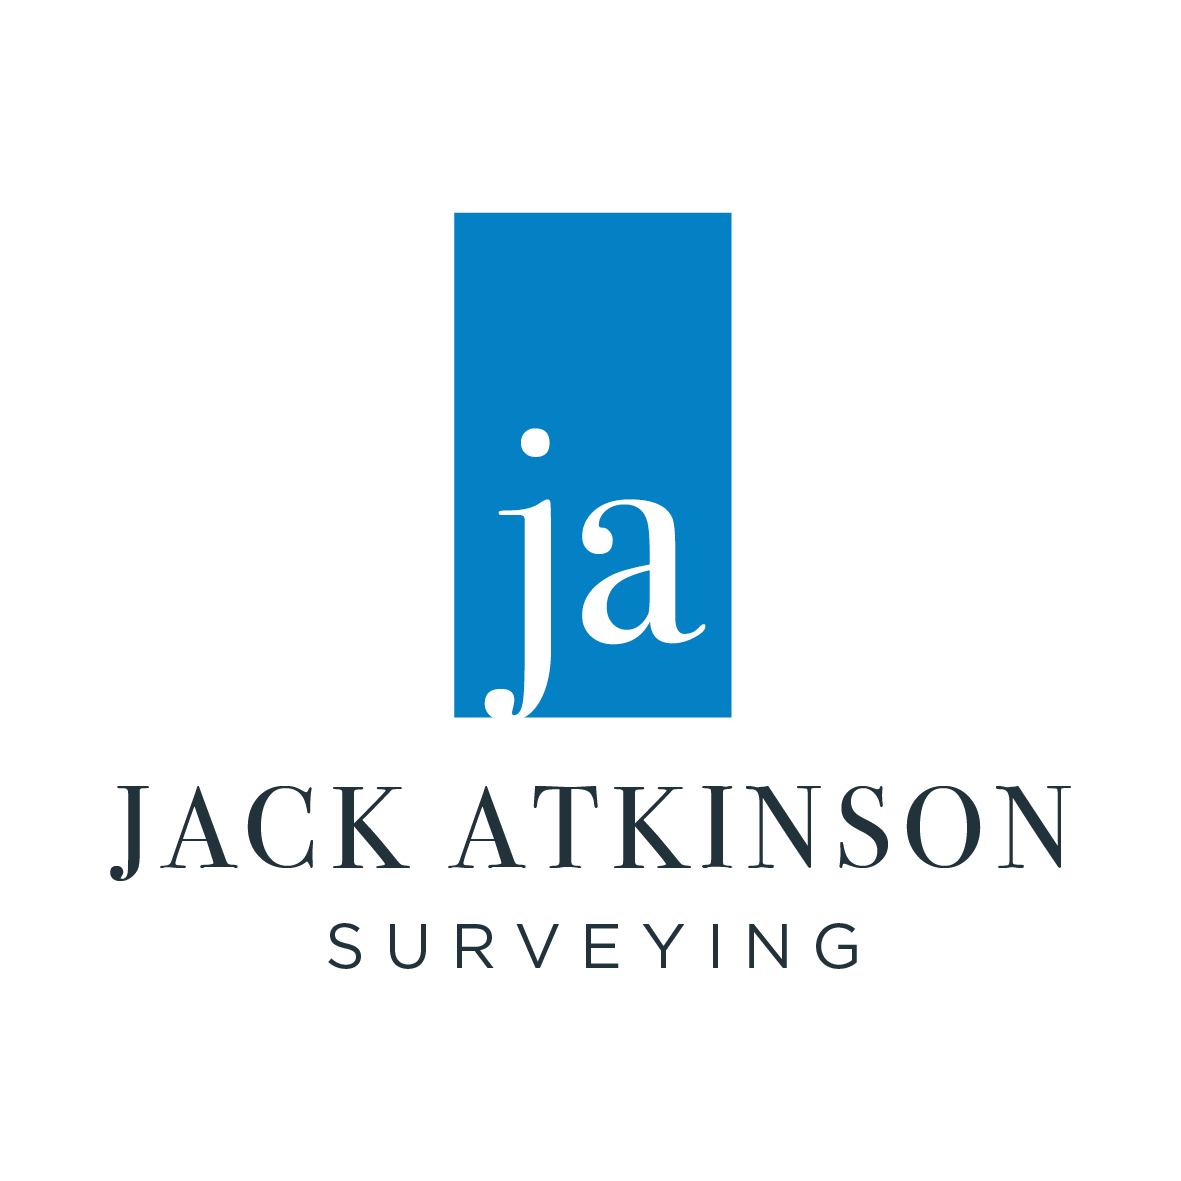 Jack Atkinson Surveying